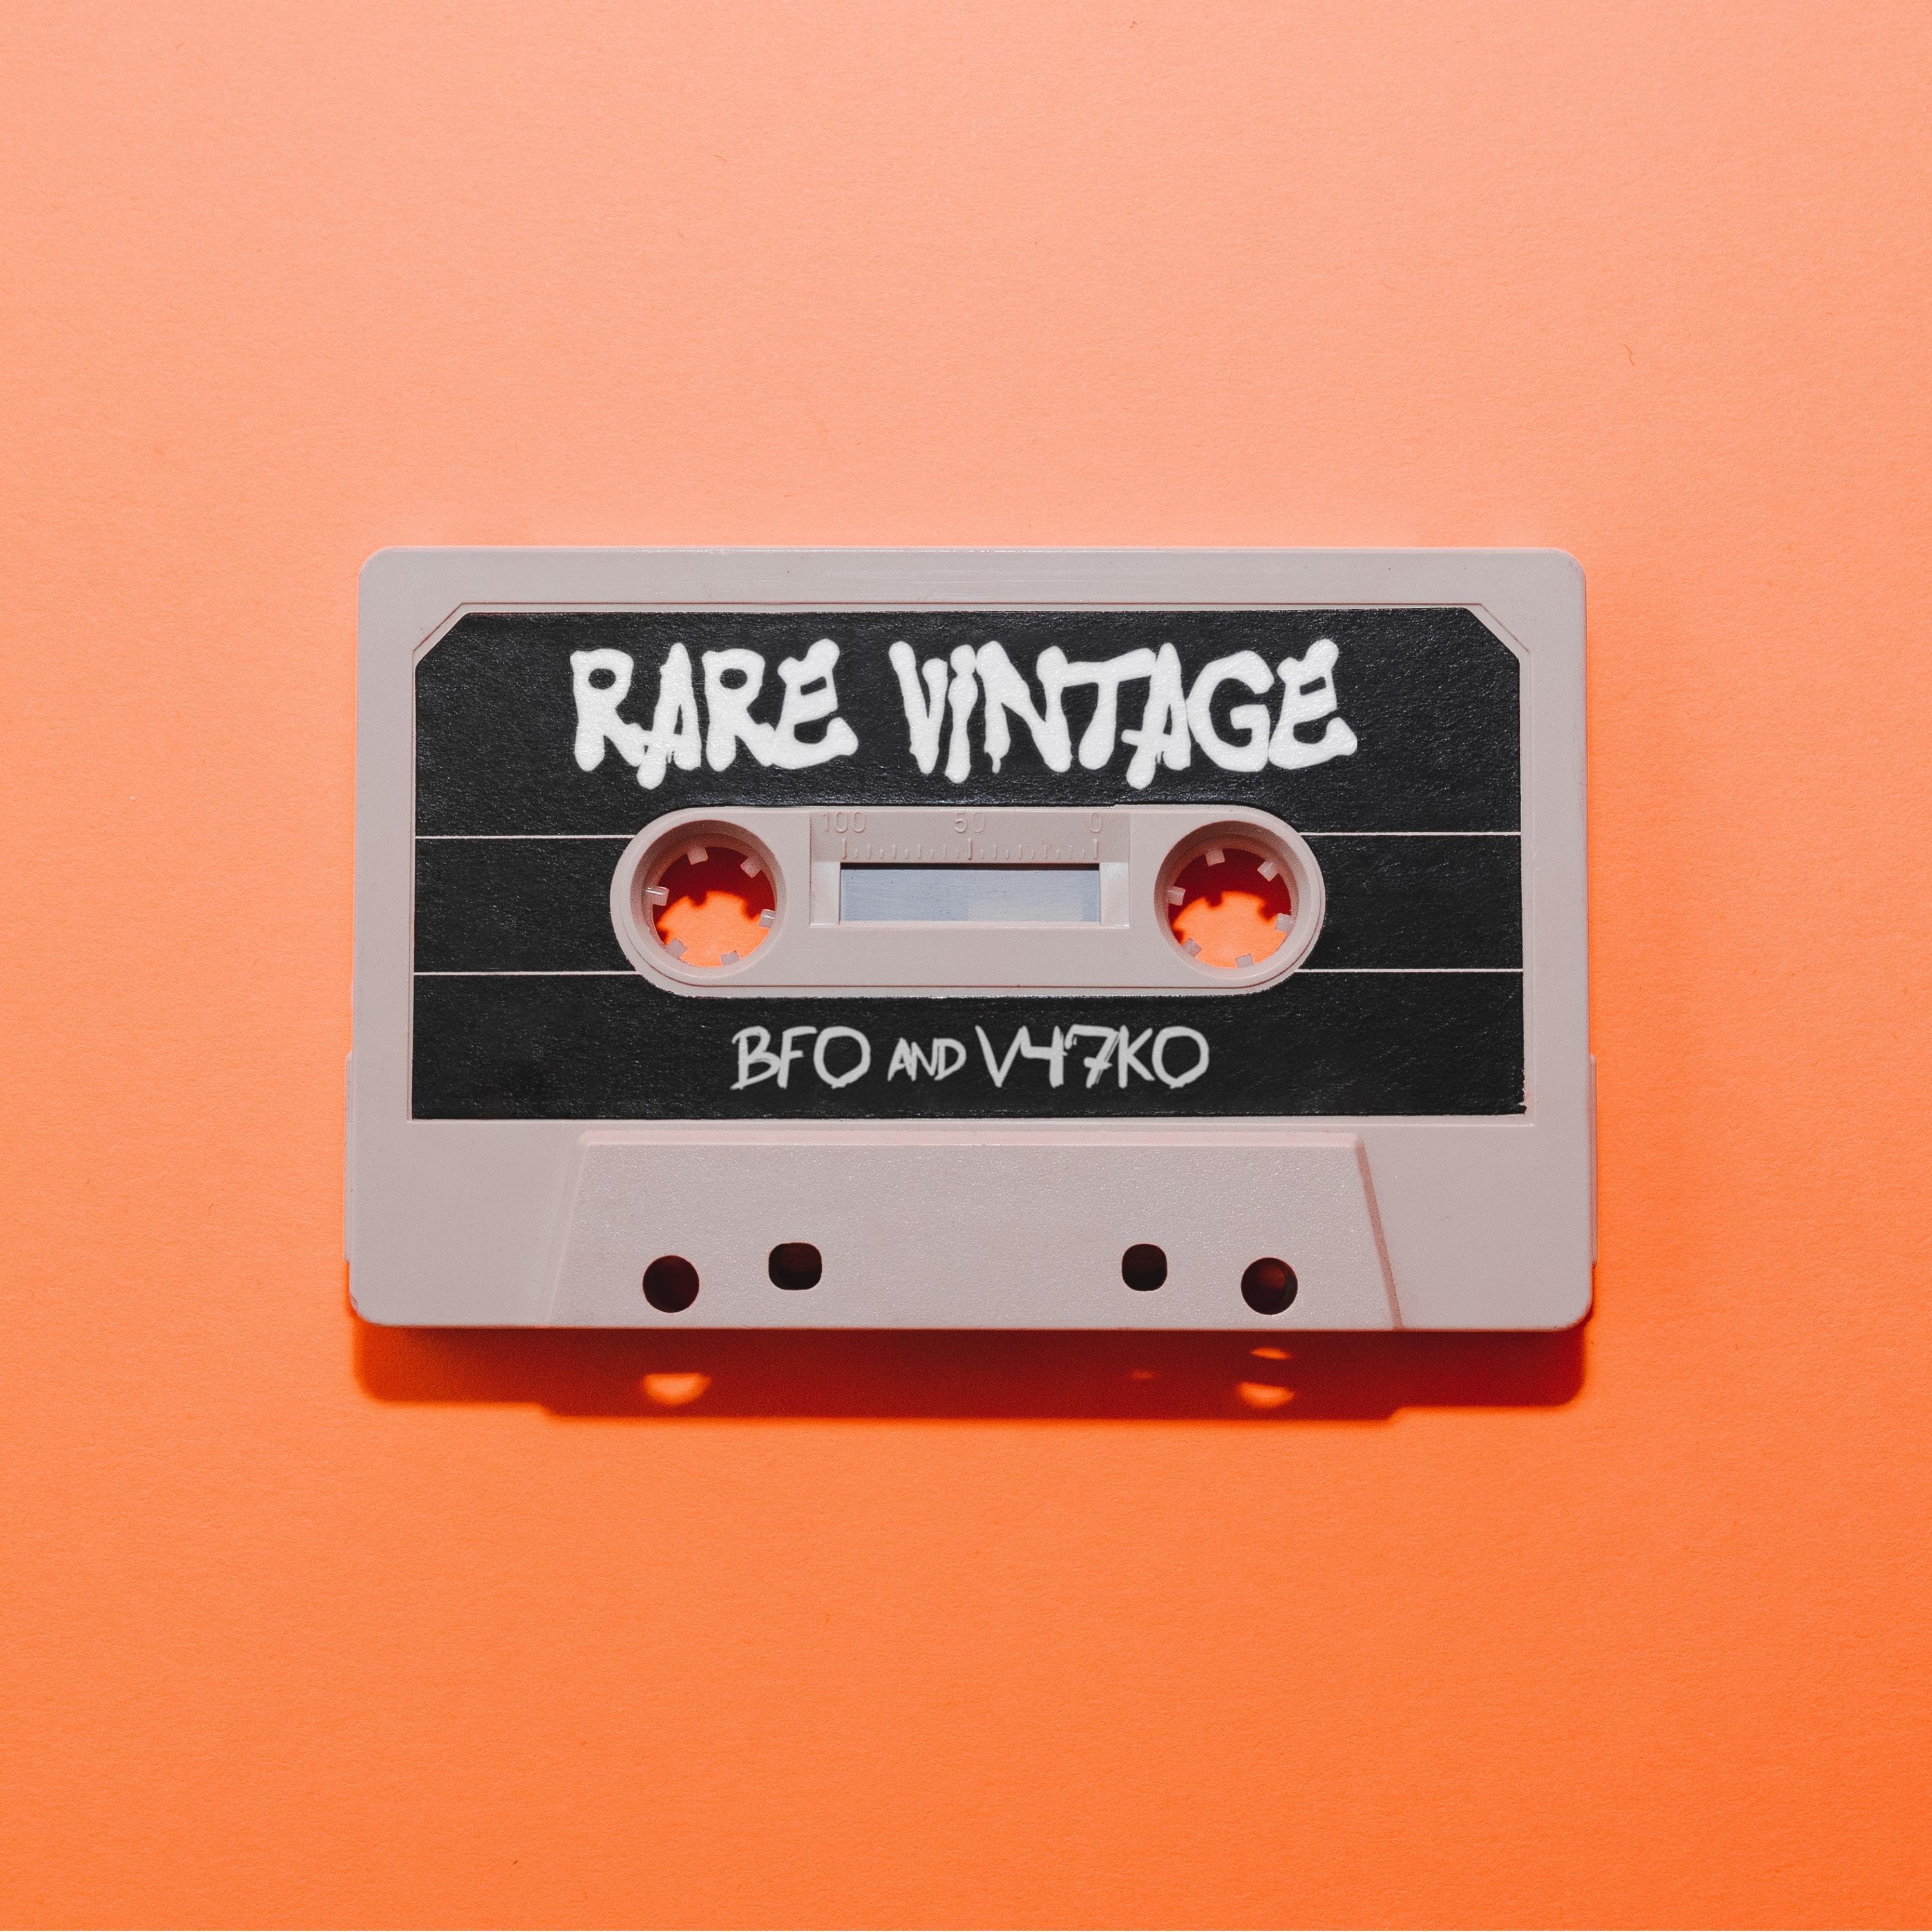 BFO - Rare Vintage (feat. V47KO)